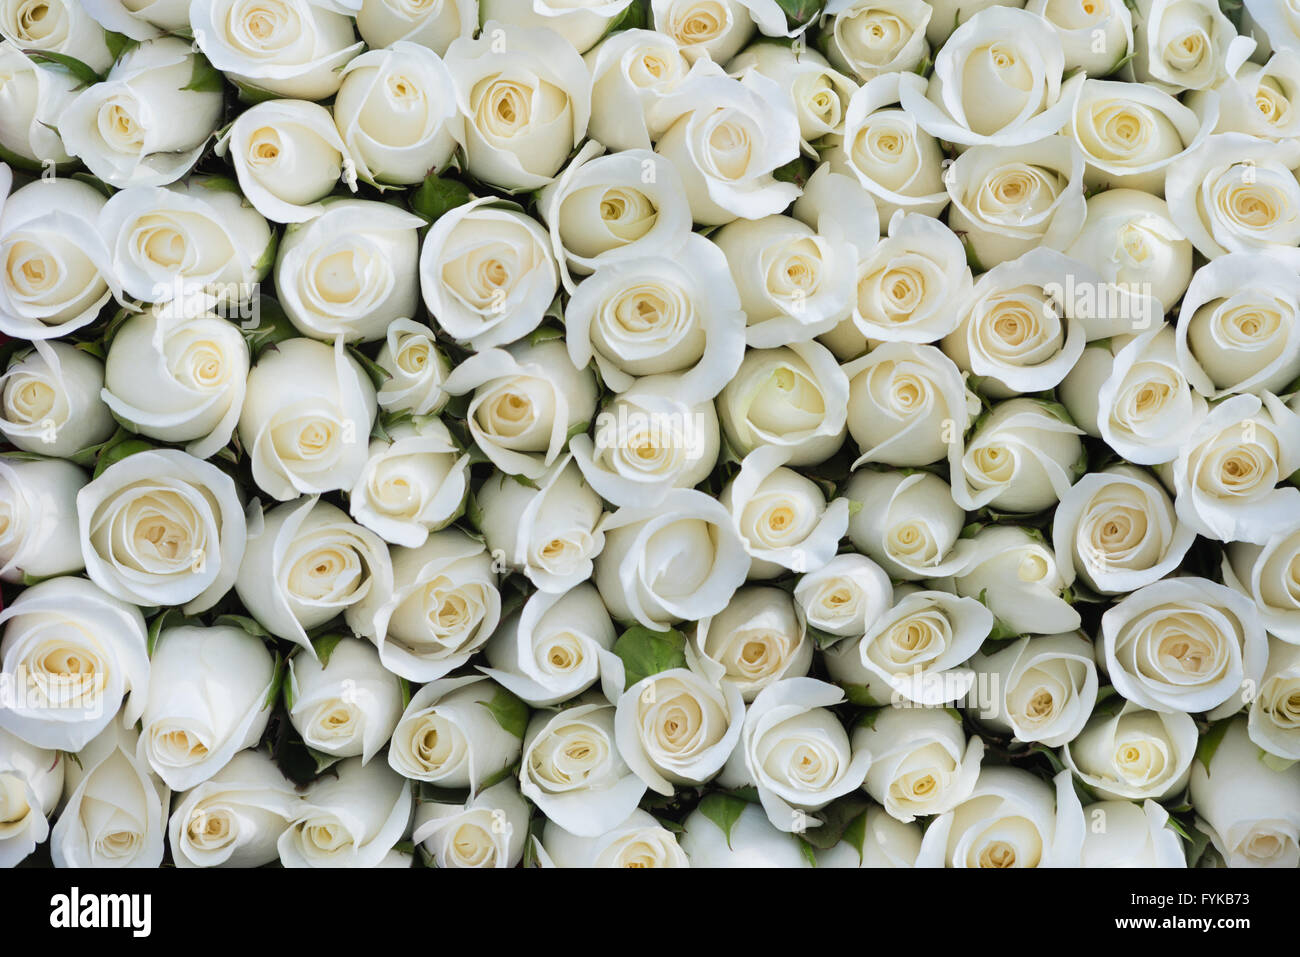 Arrière-plan de roses blanches Banque D'Images